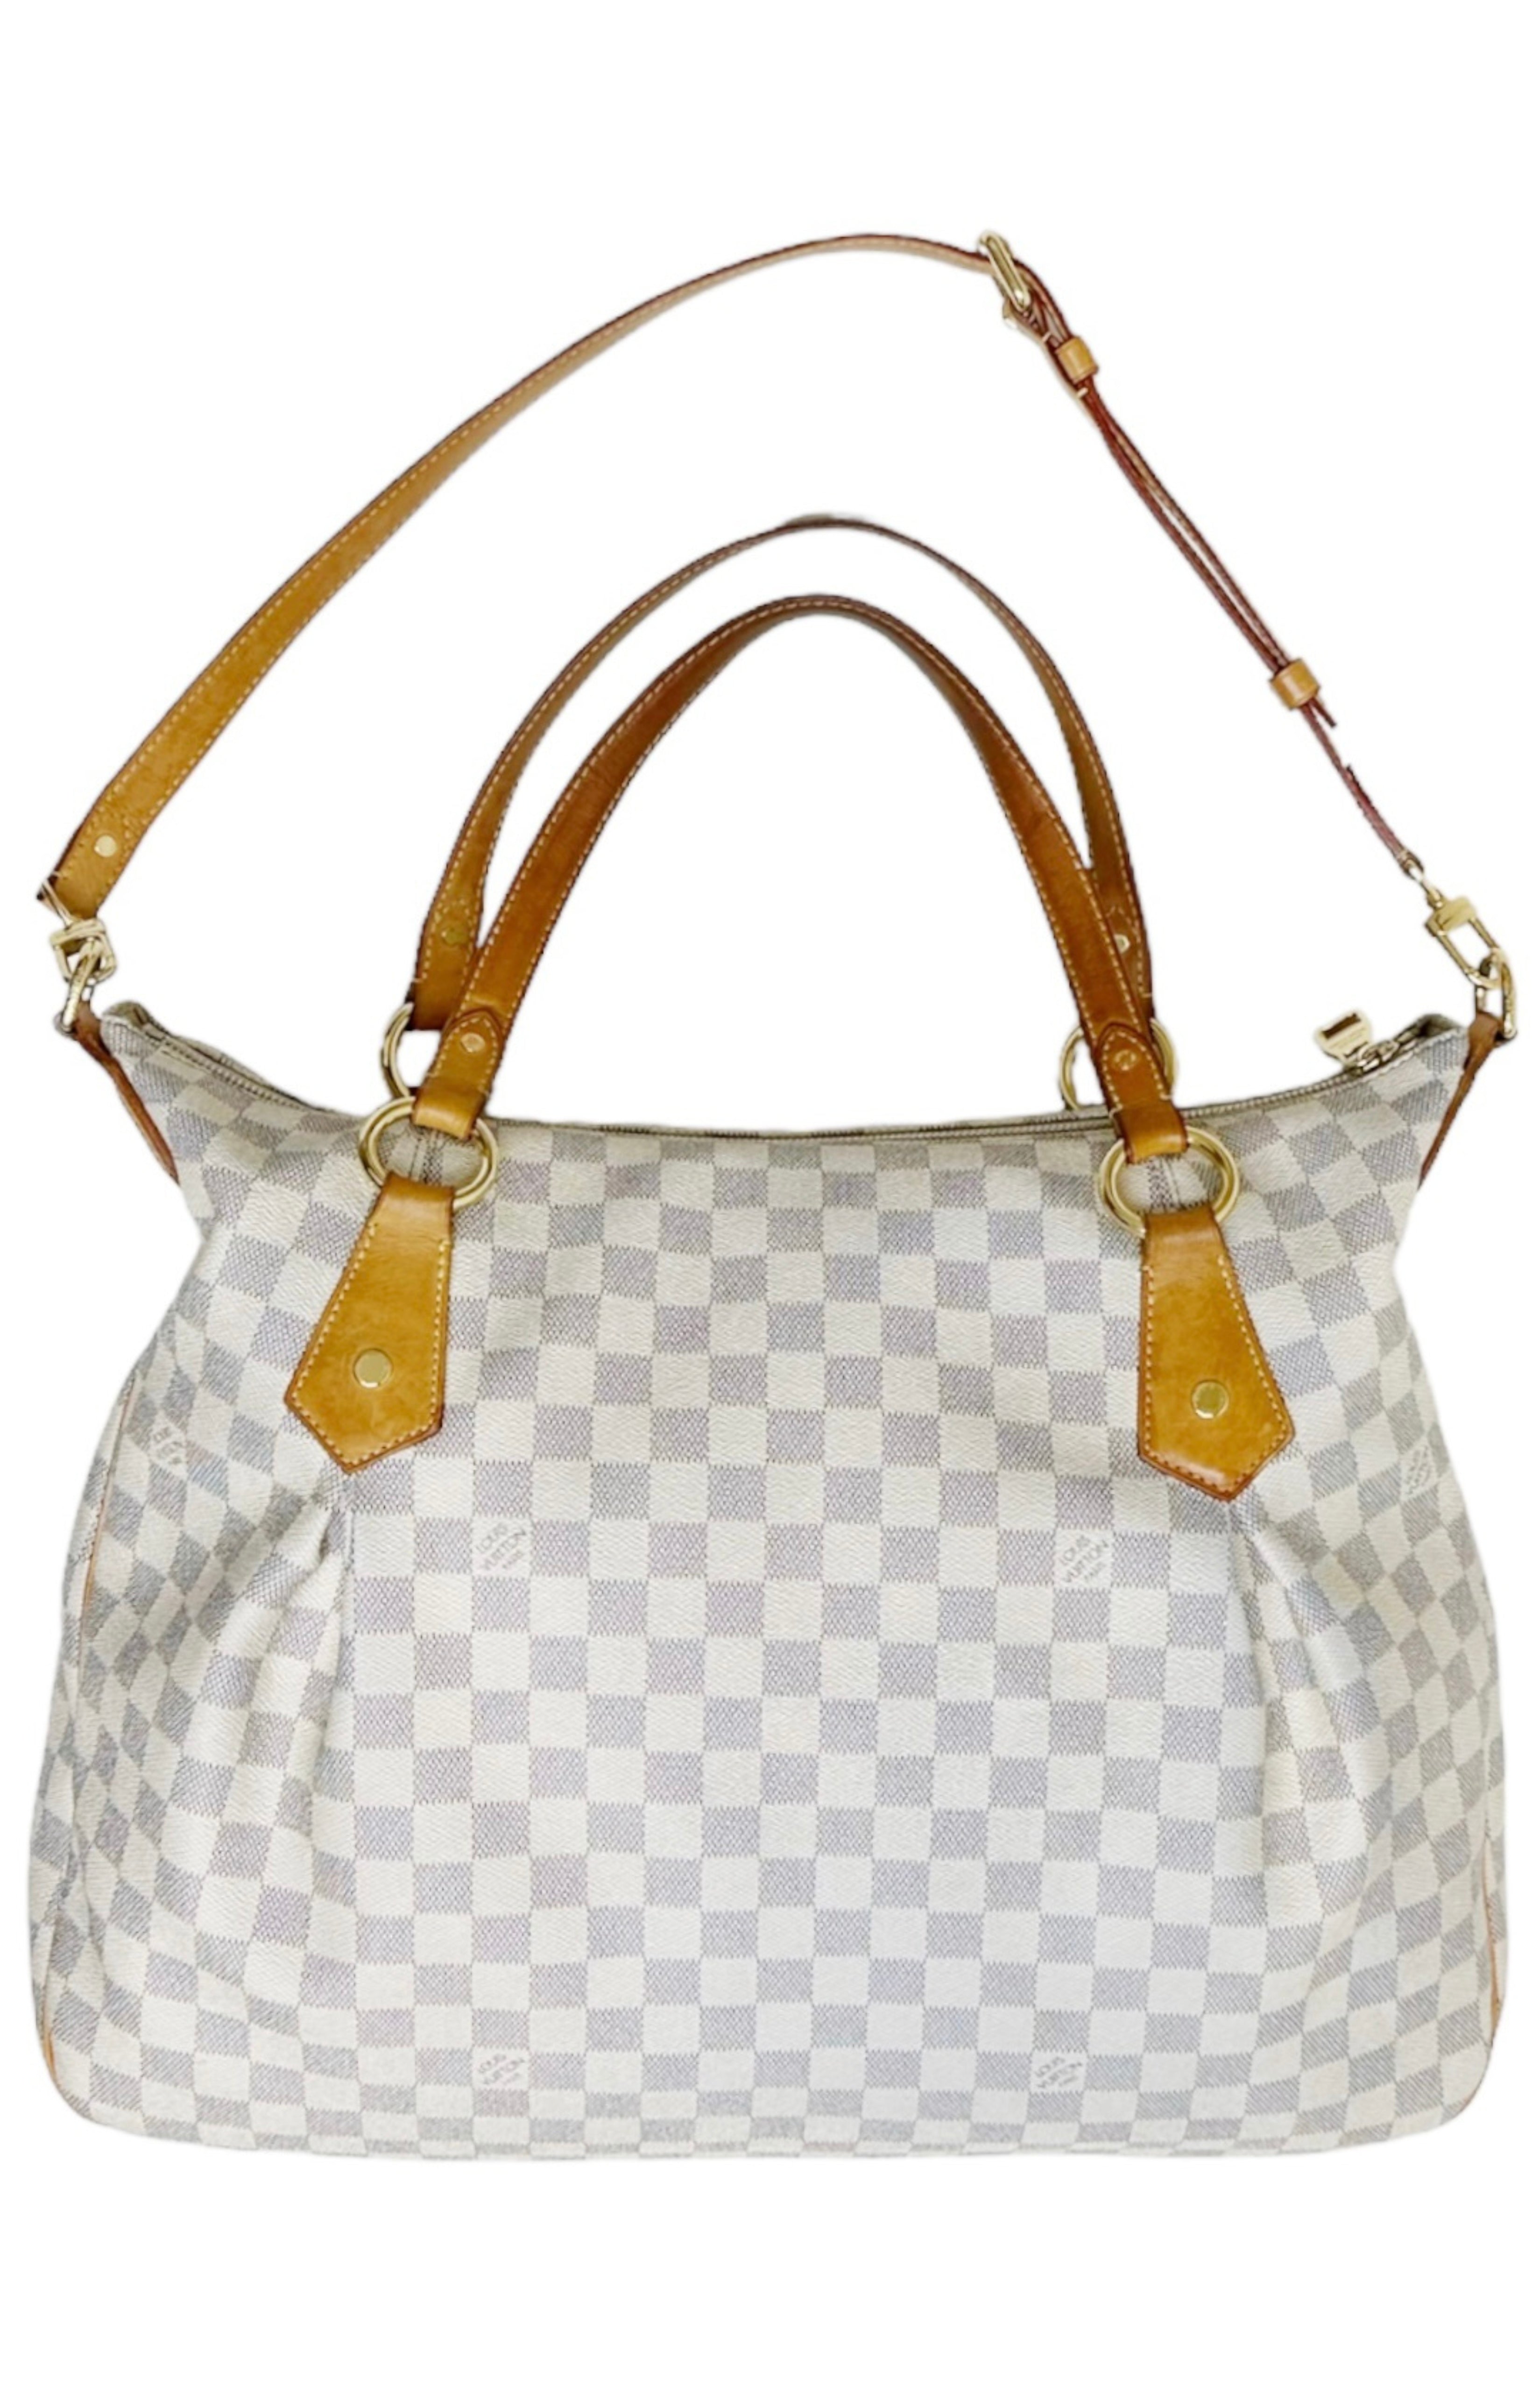 LOUIS VUITTON Bag Size: 17.5" x 4.75" x 15"; 7.5" drop handle